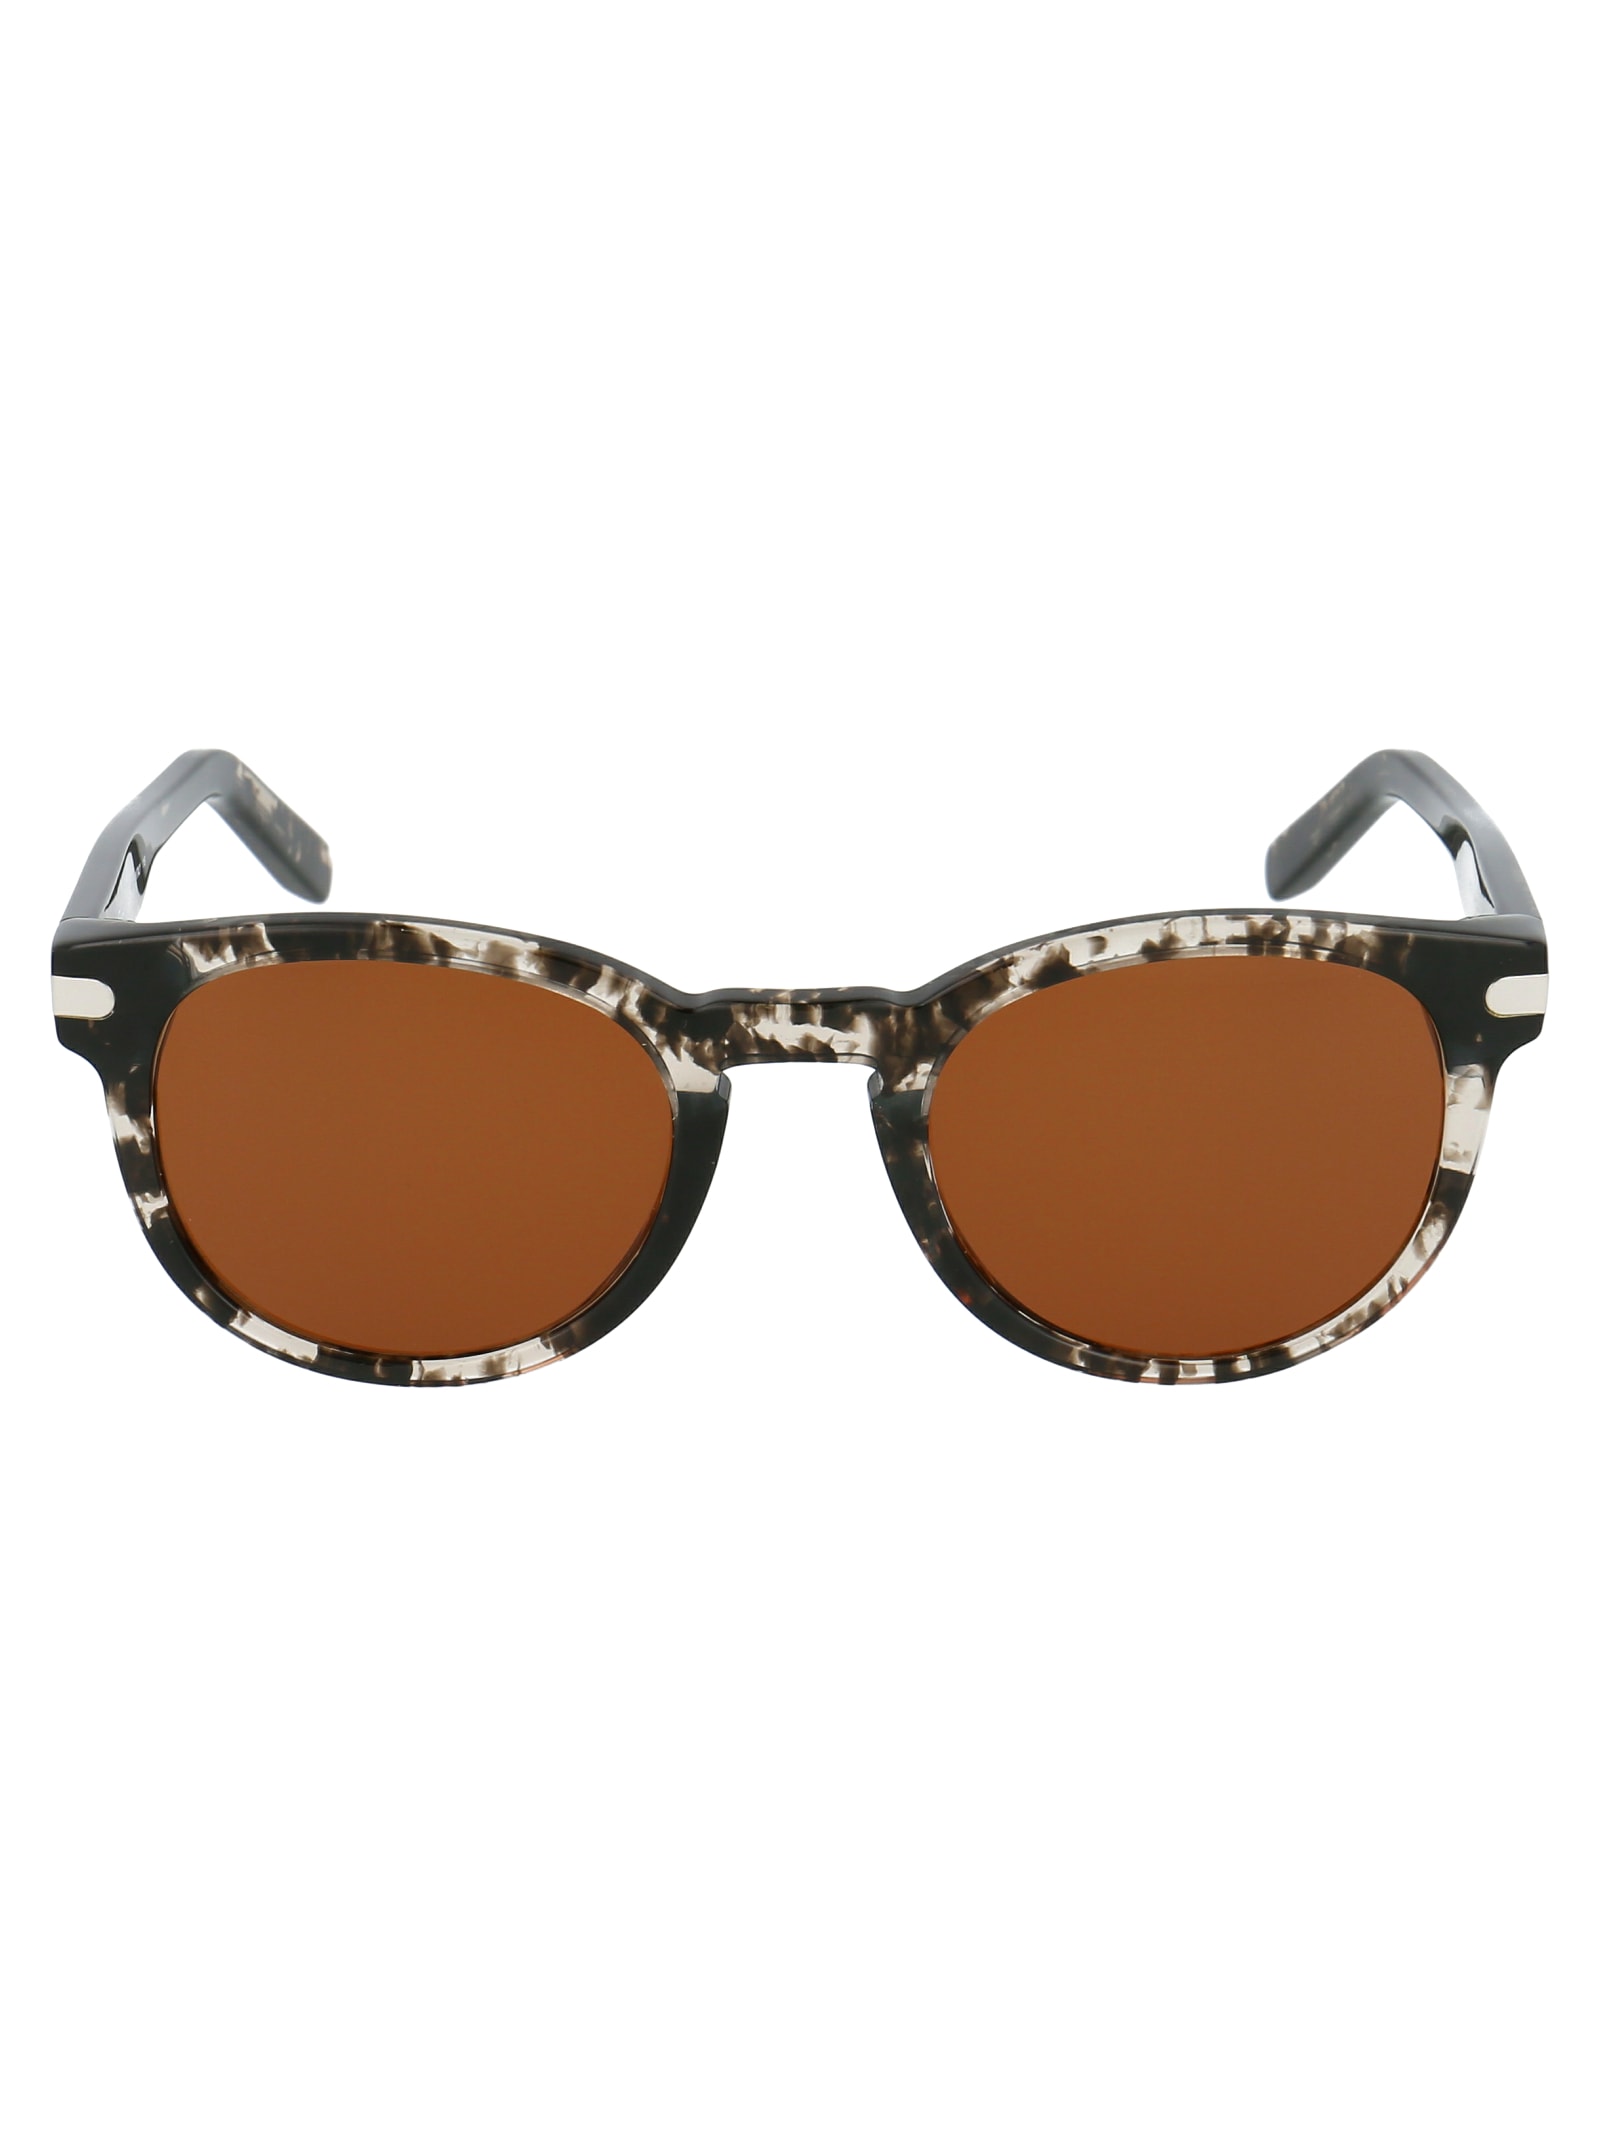 Salvatore Ferragamo Sf935s Sunglasses